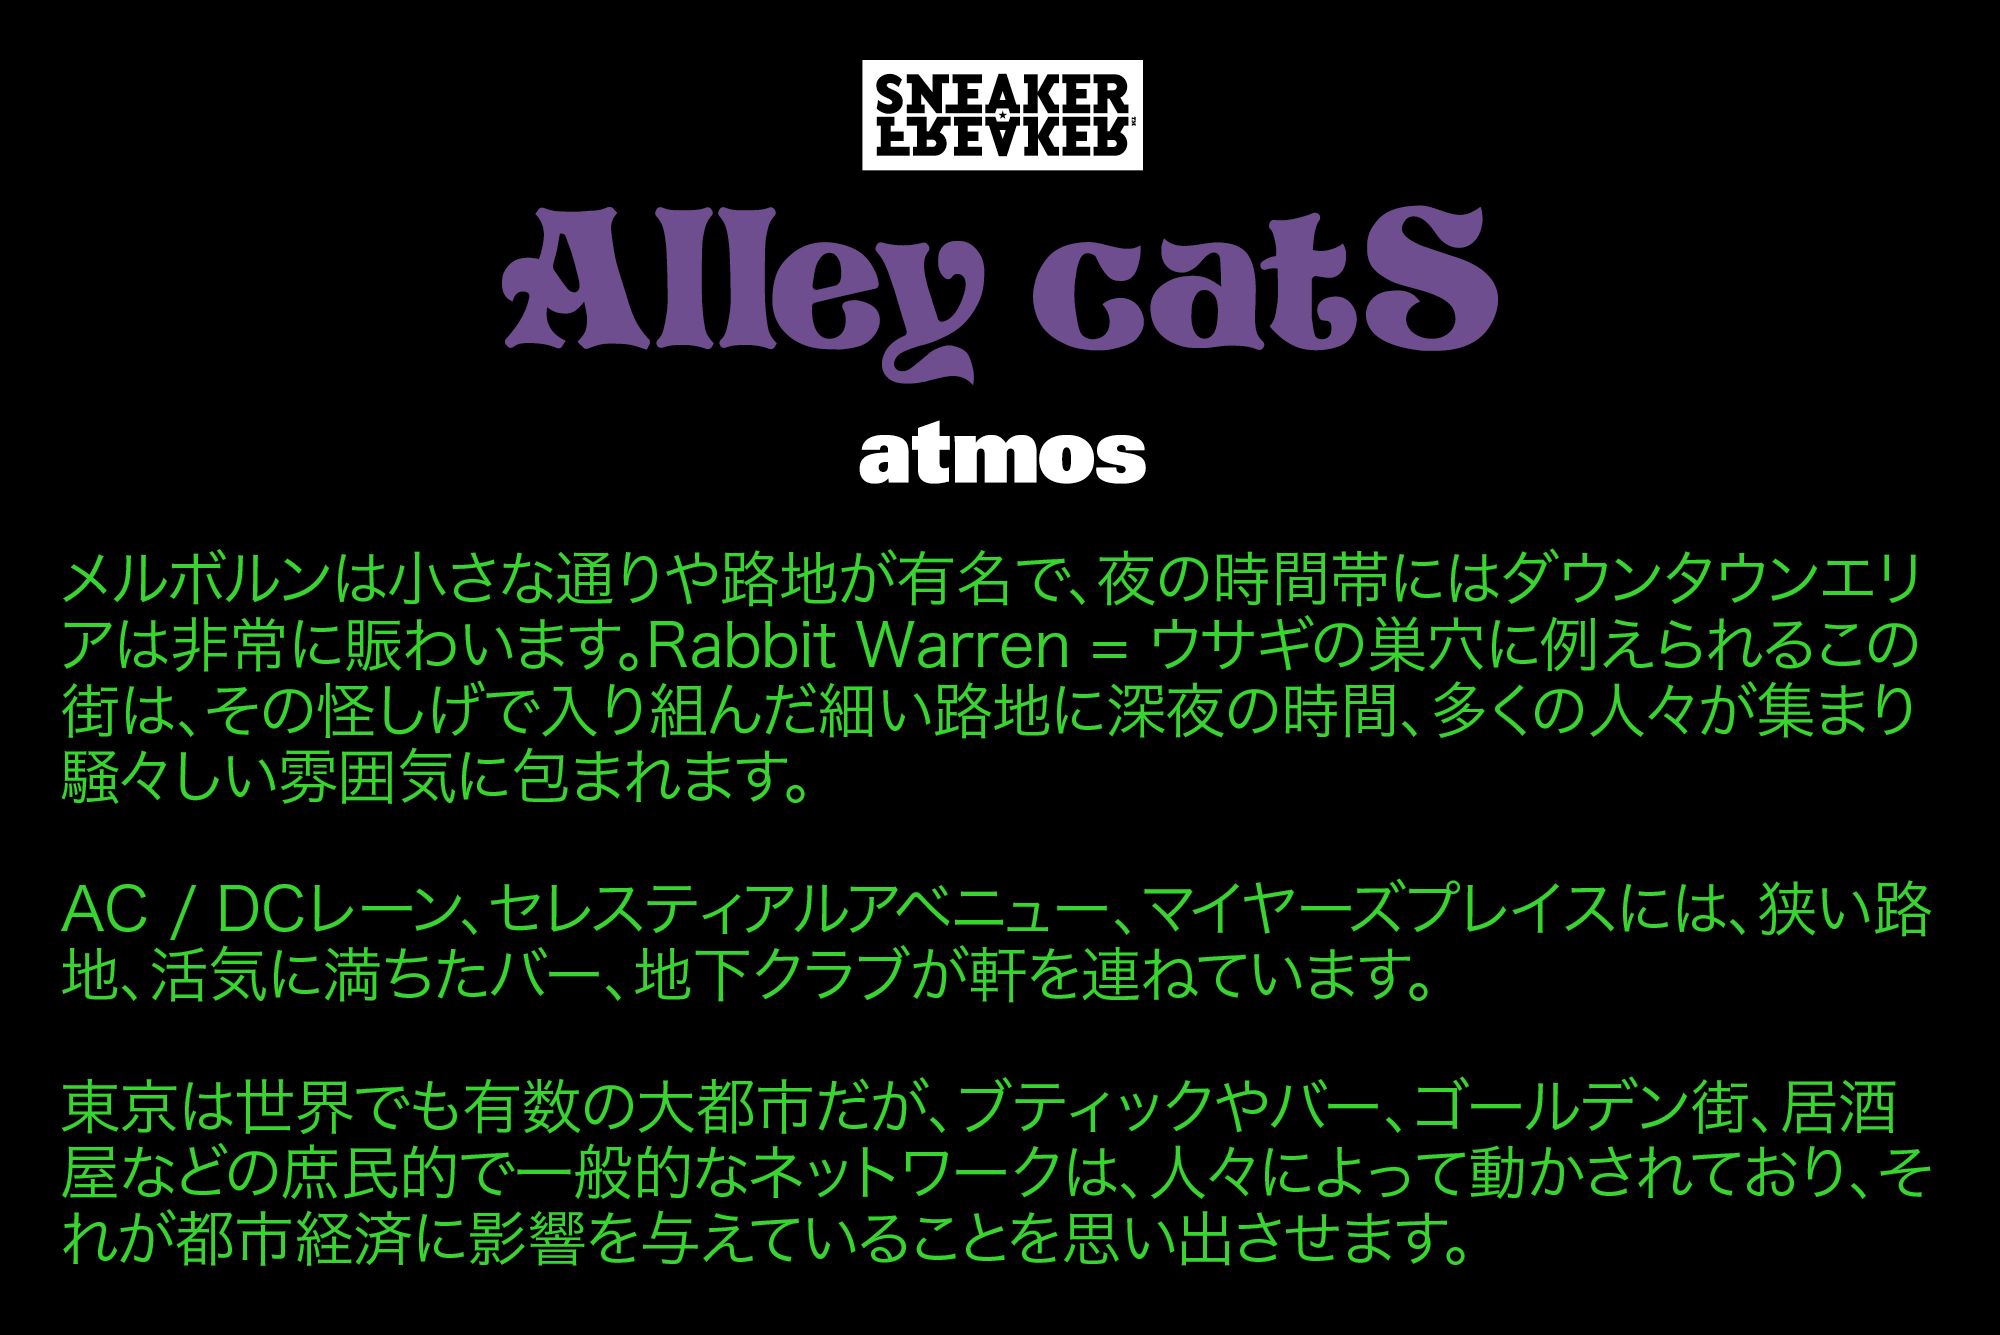 Sneaker Freaker x atmos x ASICS GEL-Lyte III Alley Cats